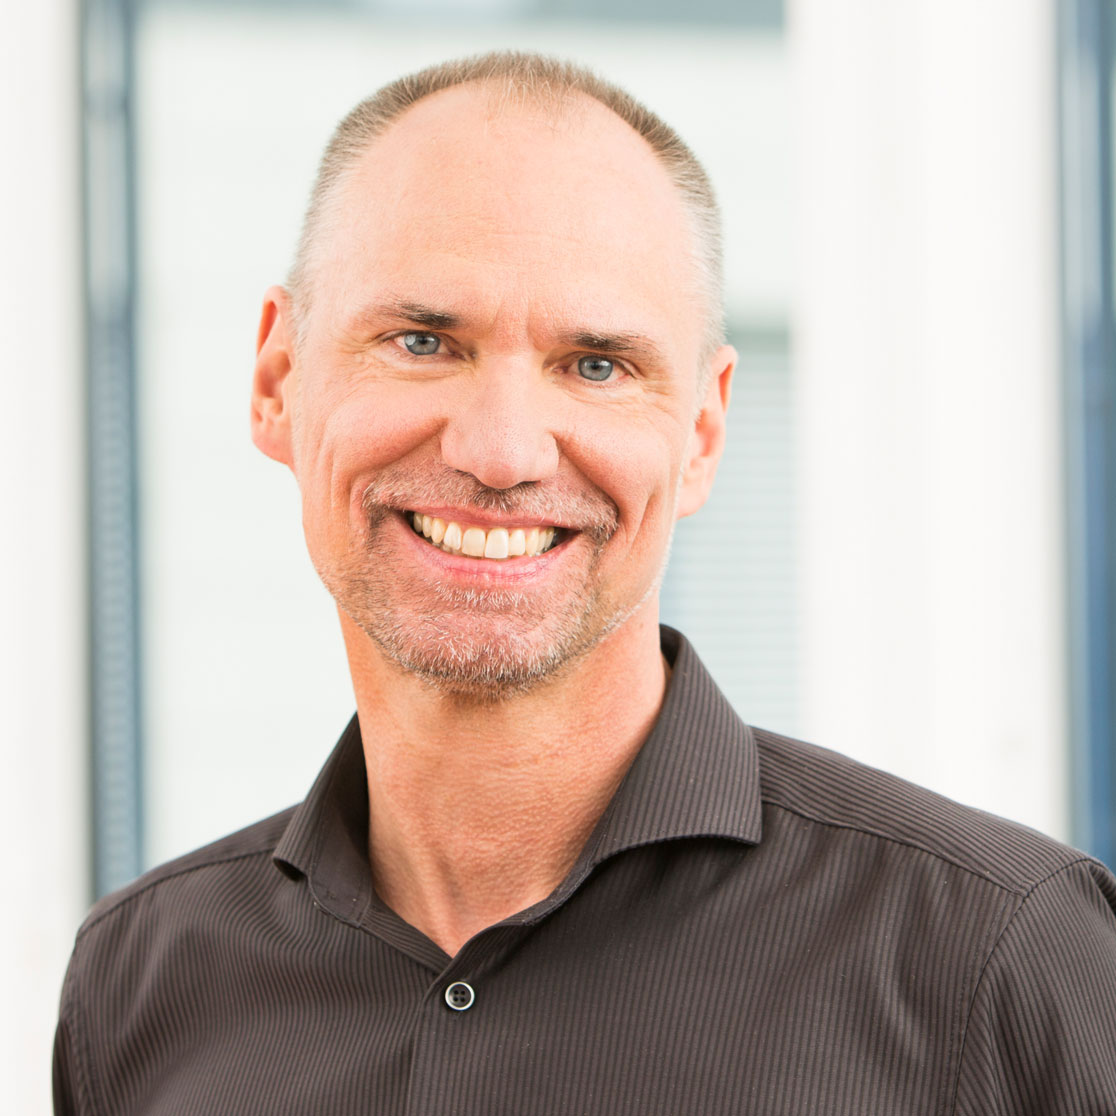 Frank Külich ist Leiter Produktentwicklung bei Kieback&Peter